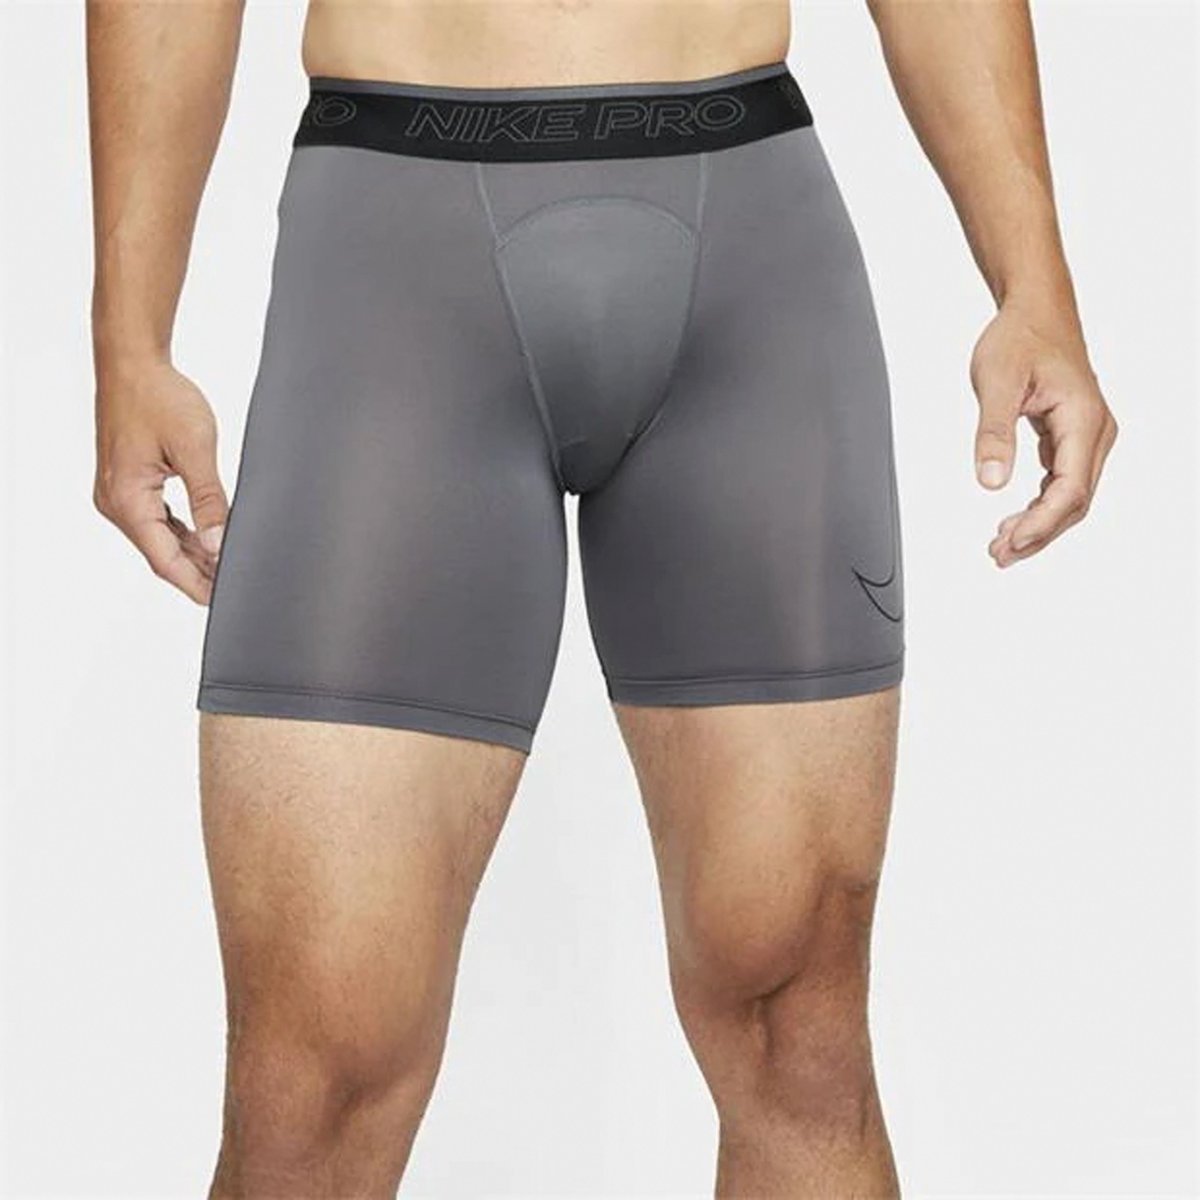 BASE Men's AFL Compression Shorts - Nude